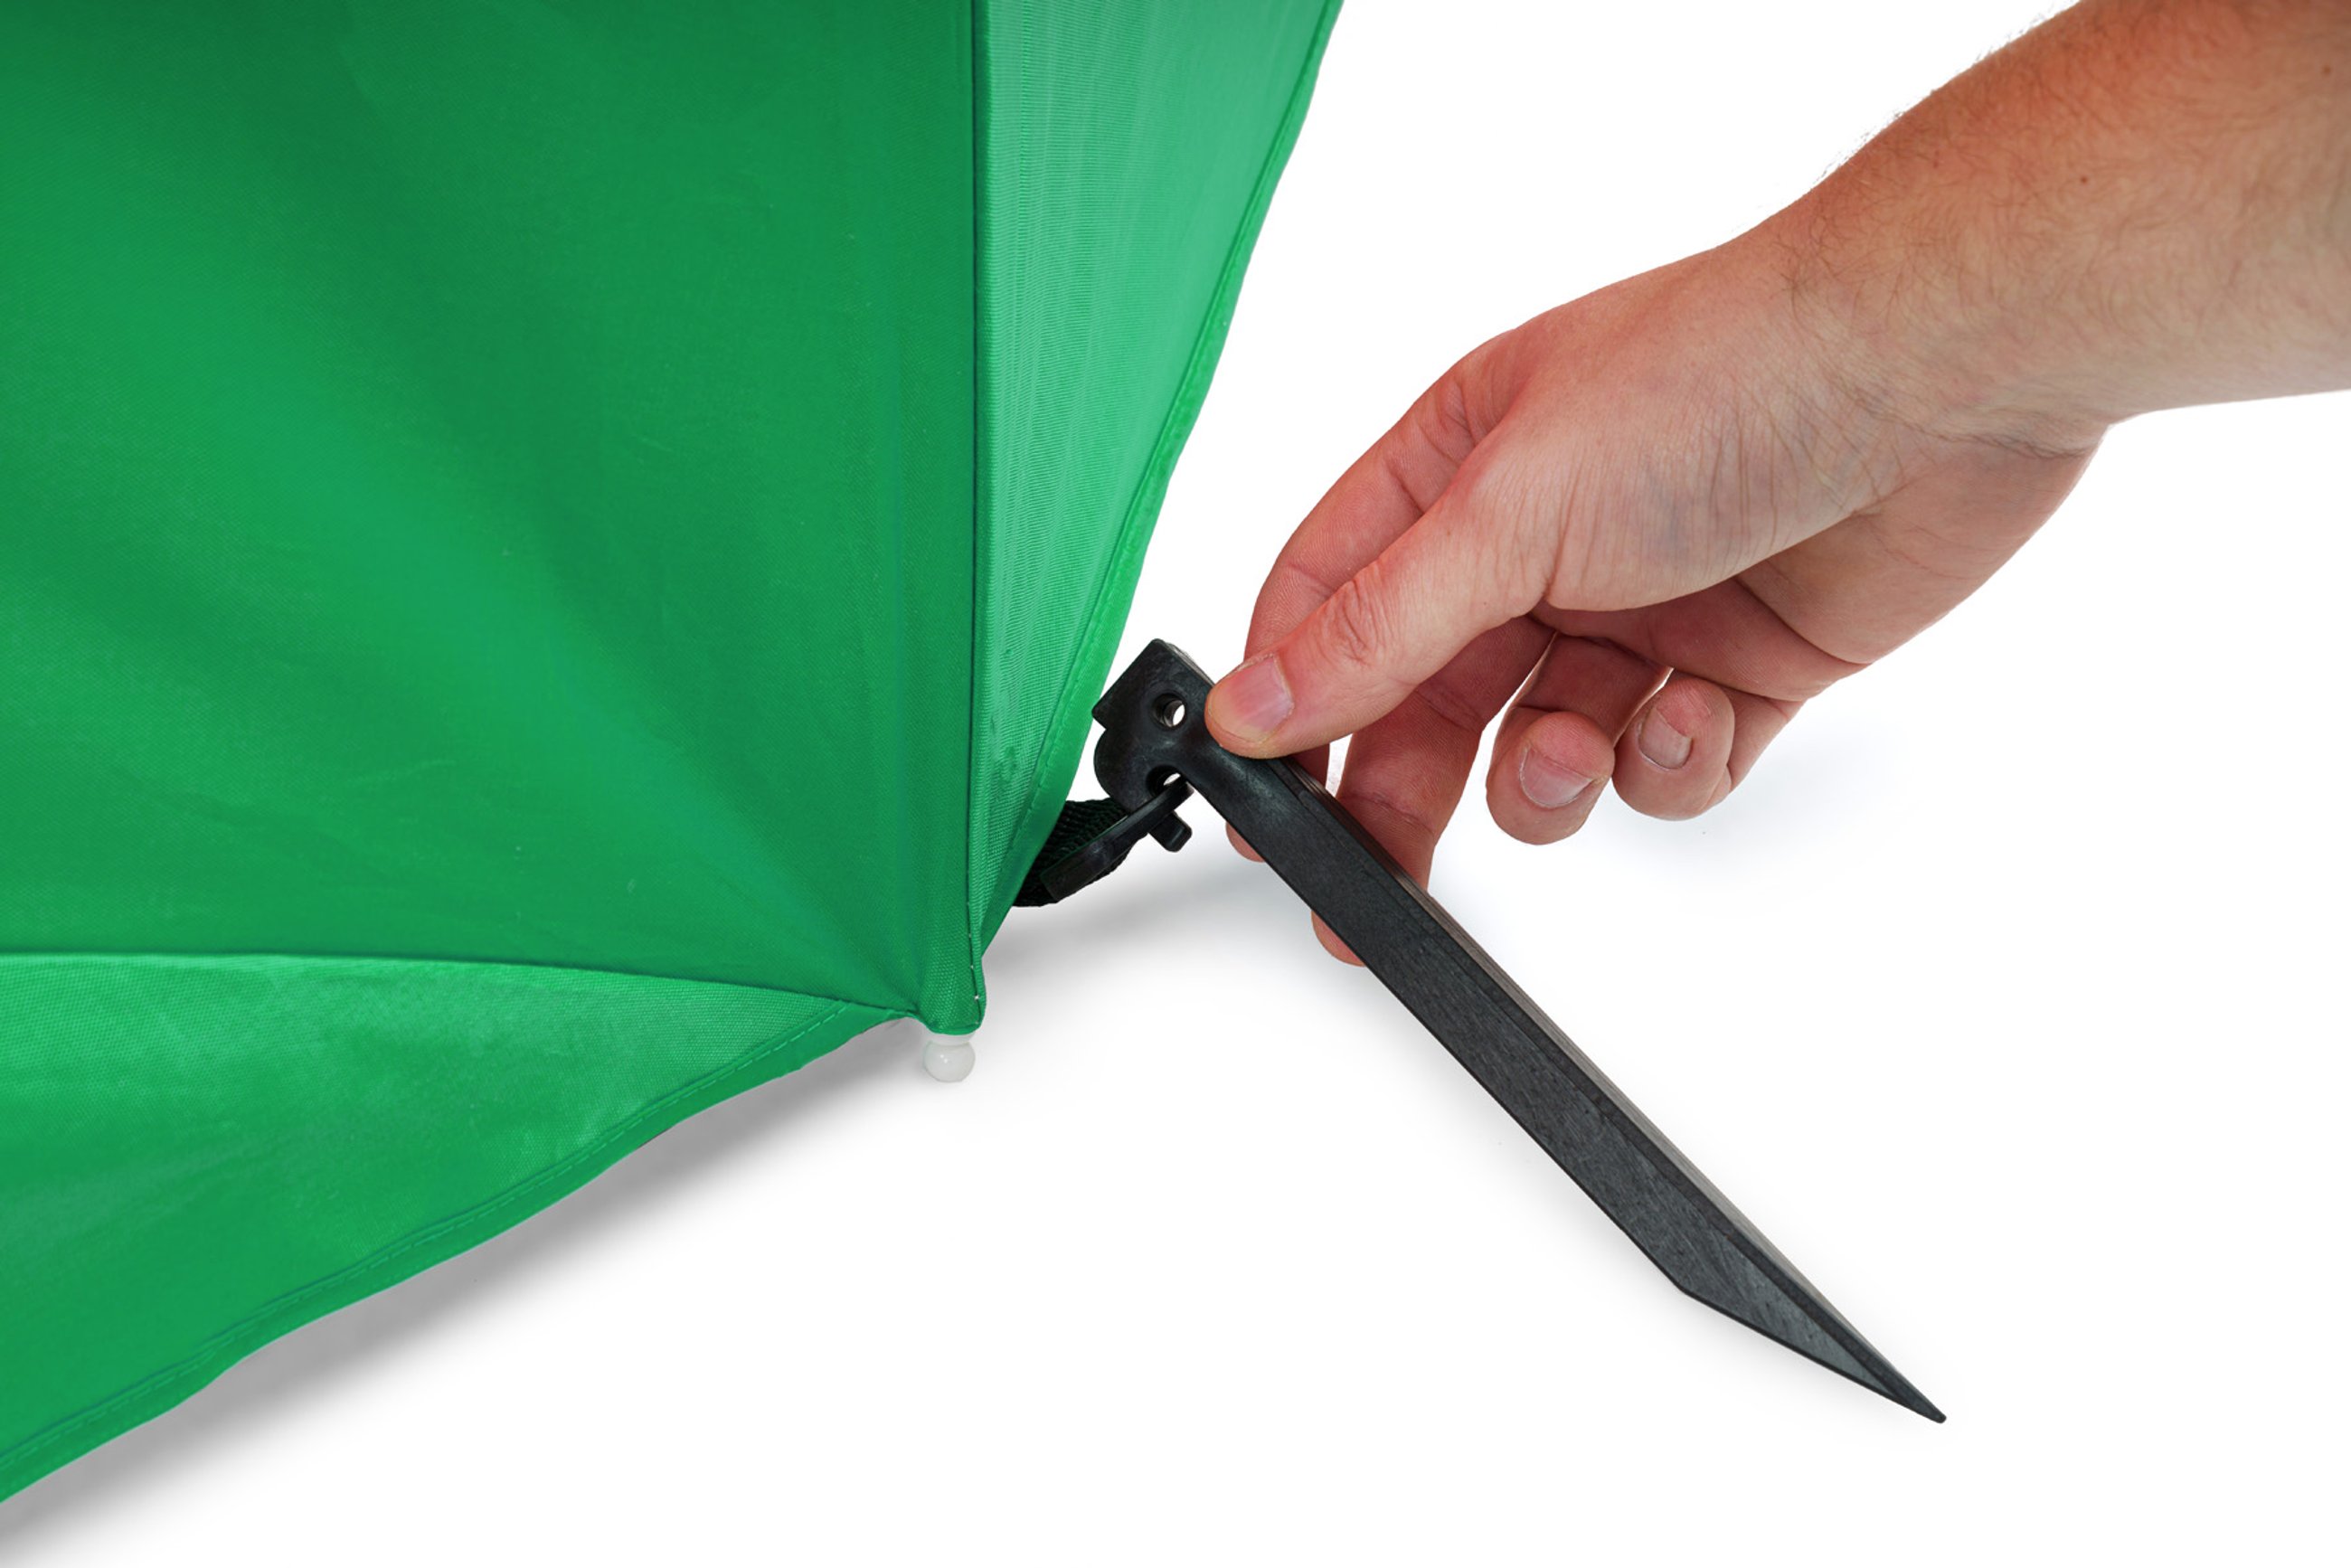 W zestawie z parasolem plażowym Sora zielona, znajdują się specjalne kotwy umożliwiające stabilne przymocowanie go do podłoża